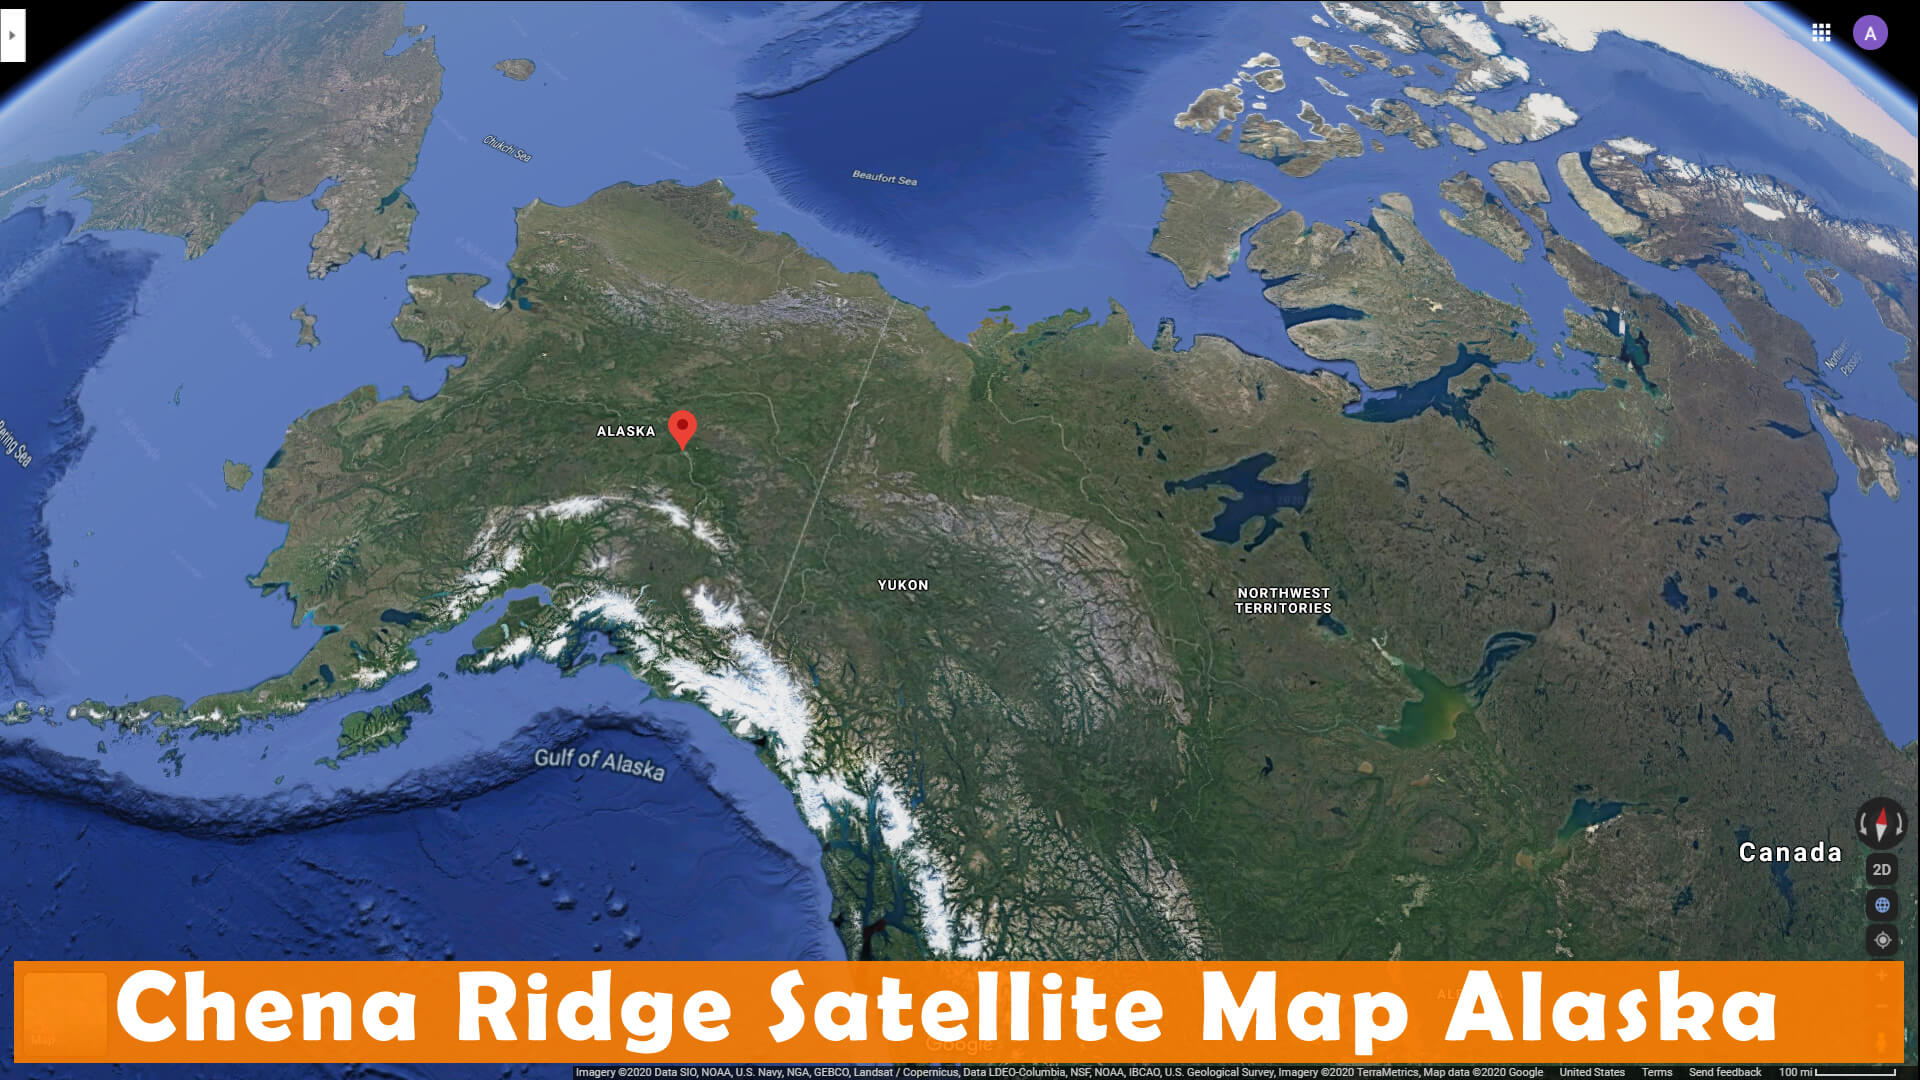 Chena Ridge Satellite Map Alaska